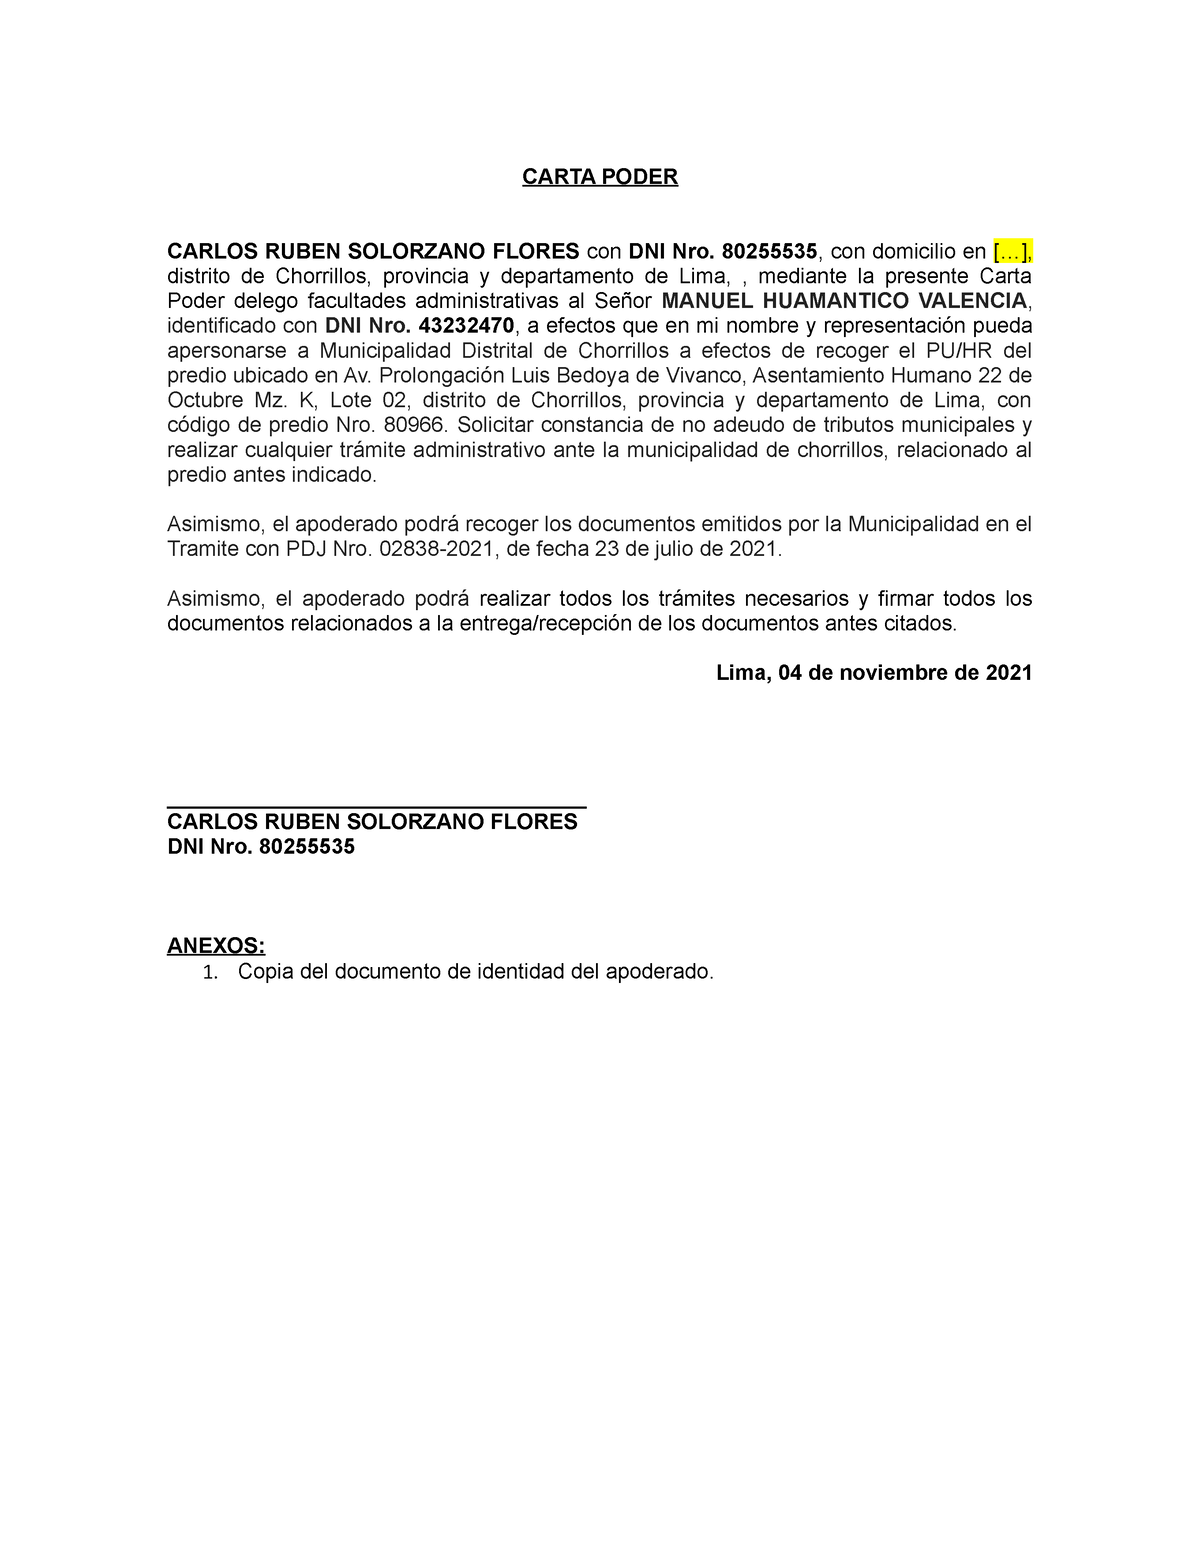 Modelo de Carta Poder Tramite Municipal - CARTA PODER CARLOS RUBEN  SOLORZANO FLORES con DNI Nro. - Studocu